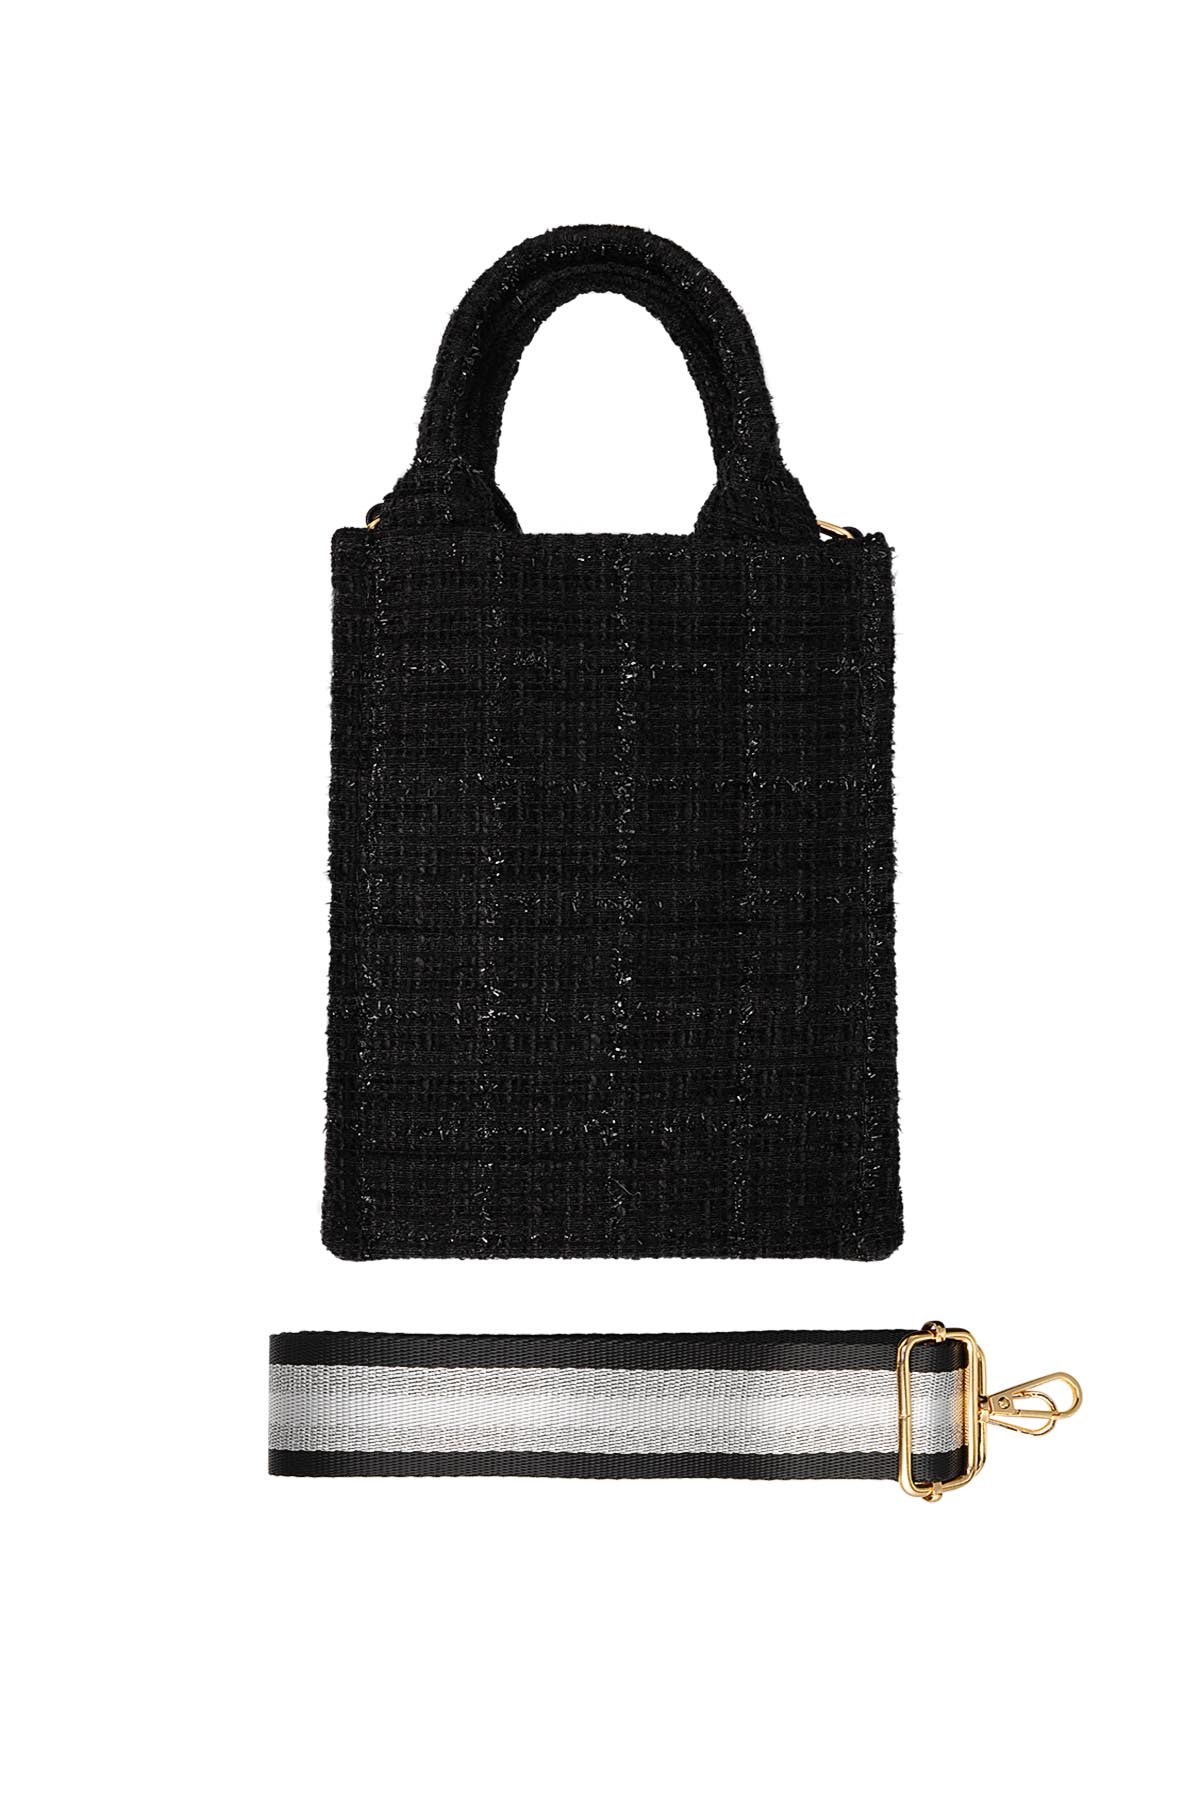 Handtasche mit Muster & Taschenriemen - schwarz Polyester 